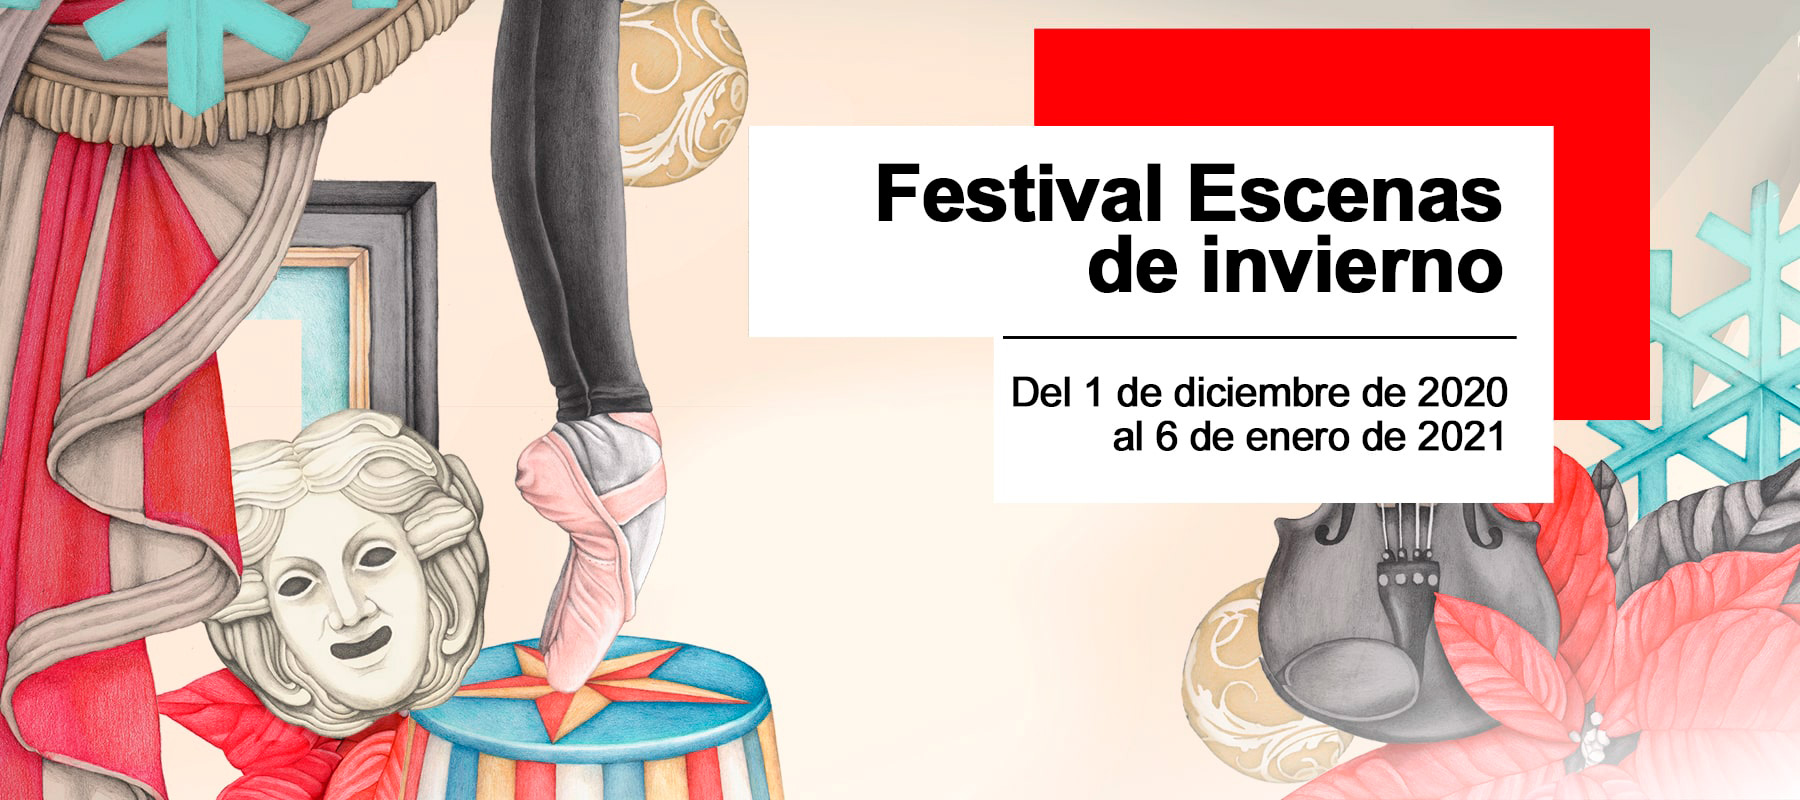 Cartel de Festival Escenas de invierno 2020 de la Comunidad de Madrid